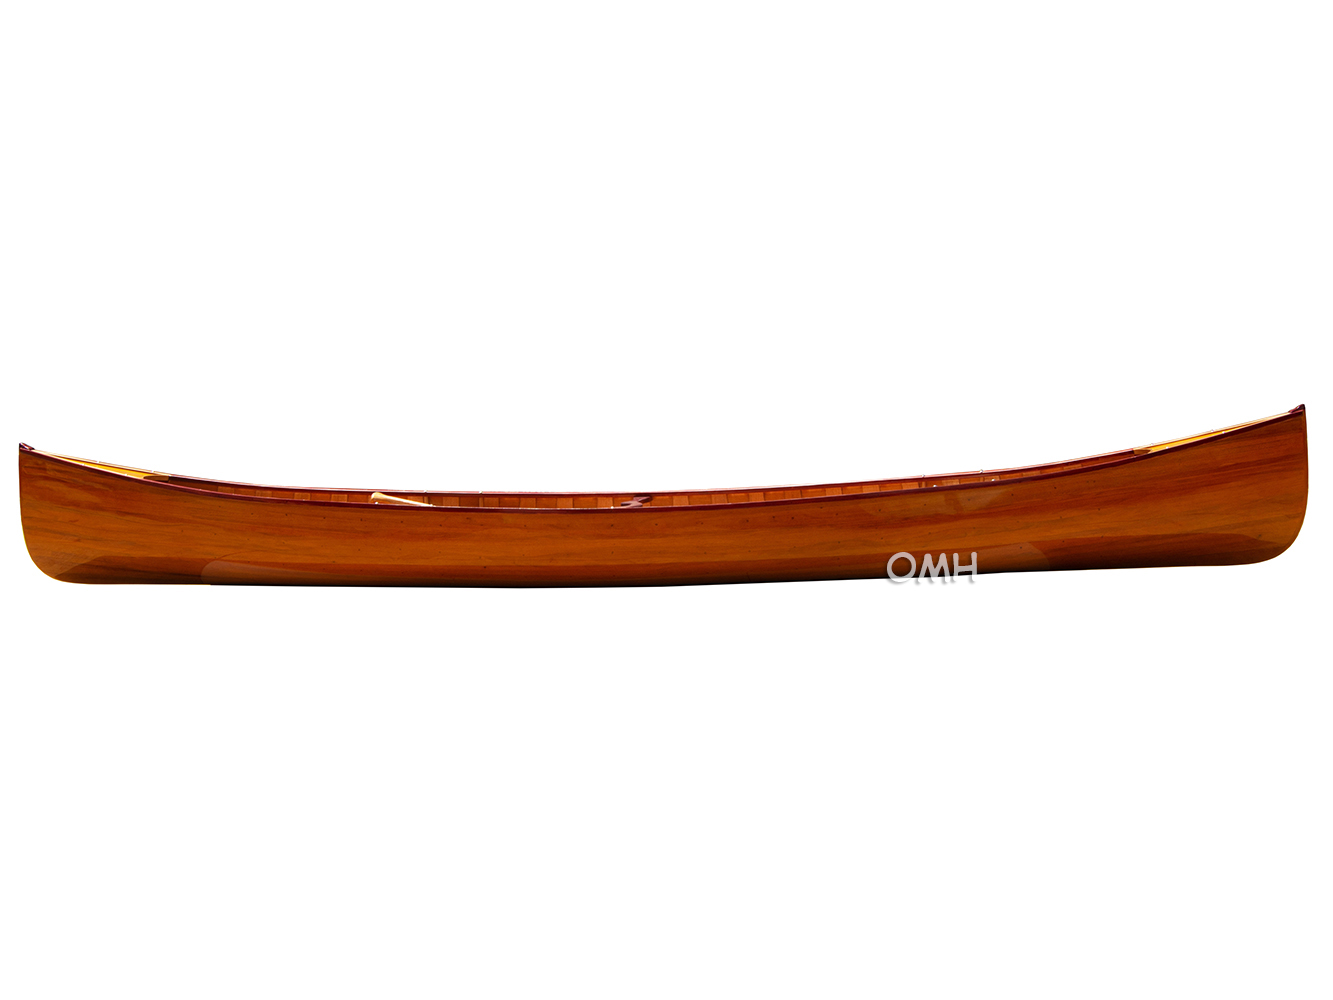 K033G Wooden Canoe with Ribs 16 Mahogany k033g-wooden-canoe-with-ribs-16-mahogany-l01.jpg